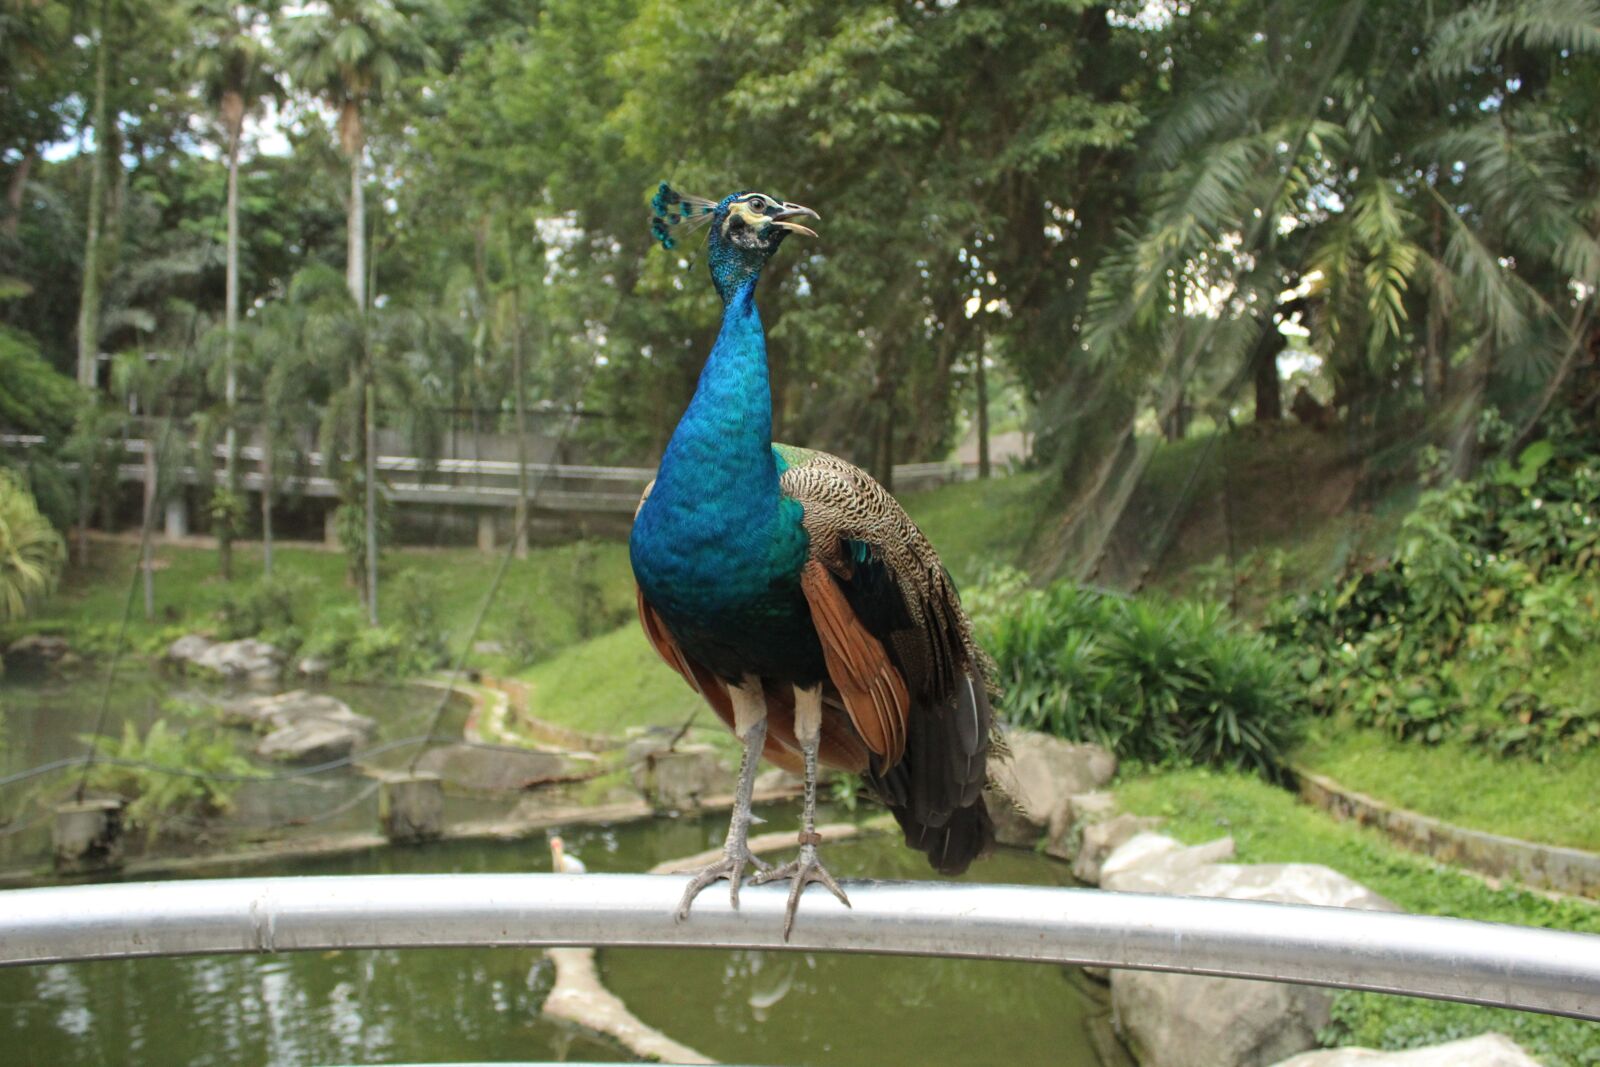 Canon EOS 1200D (EOS Rebel T5 / EOS Kiss X70 / EOS Hi) sample photo. Bird, peacock, colorful photography